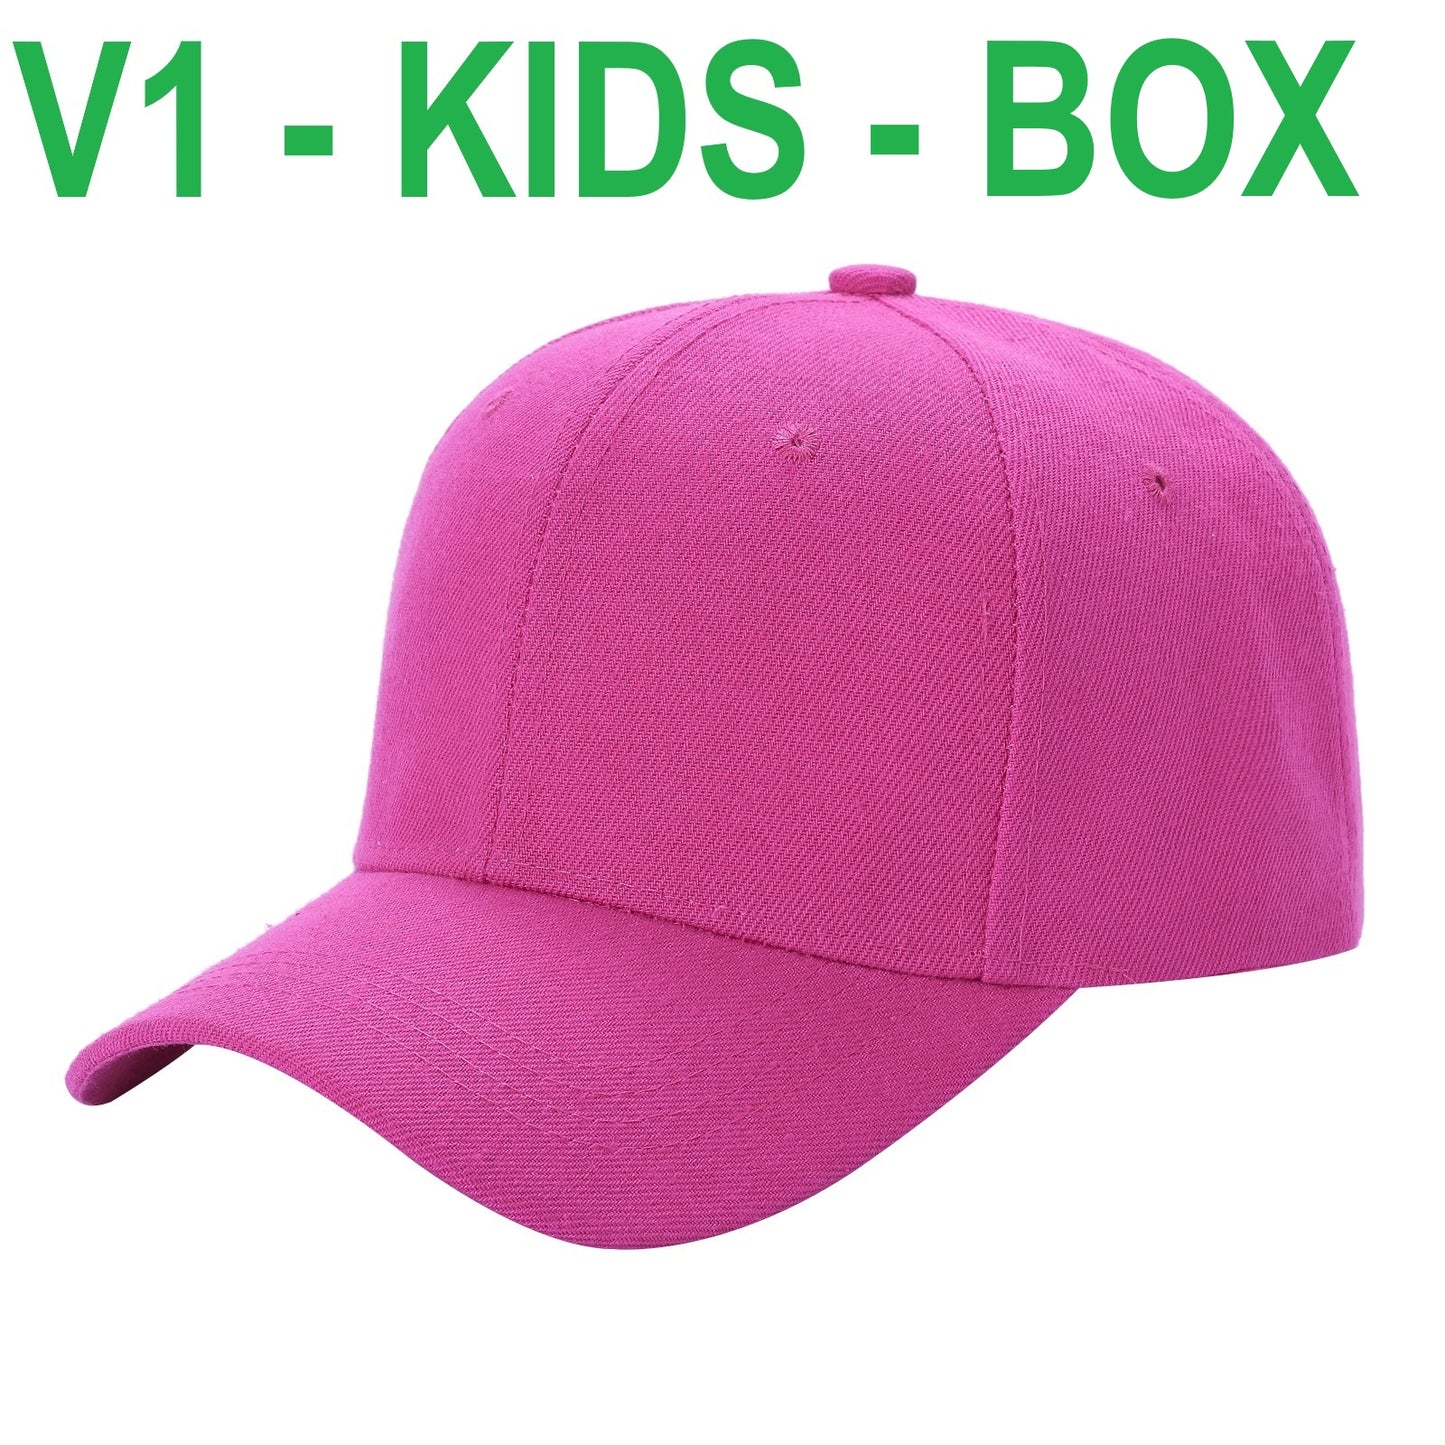 BOX KIDS V1 - KIDS SOLID VELCRO - $252 / BOX  (1 BOX = 18DZ = 216 PCS) - $14/DZ